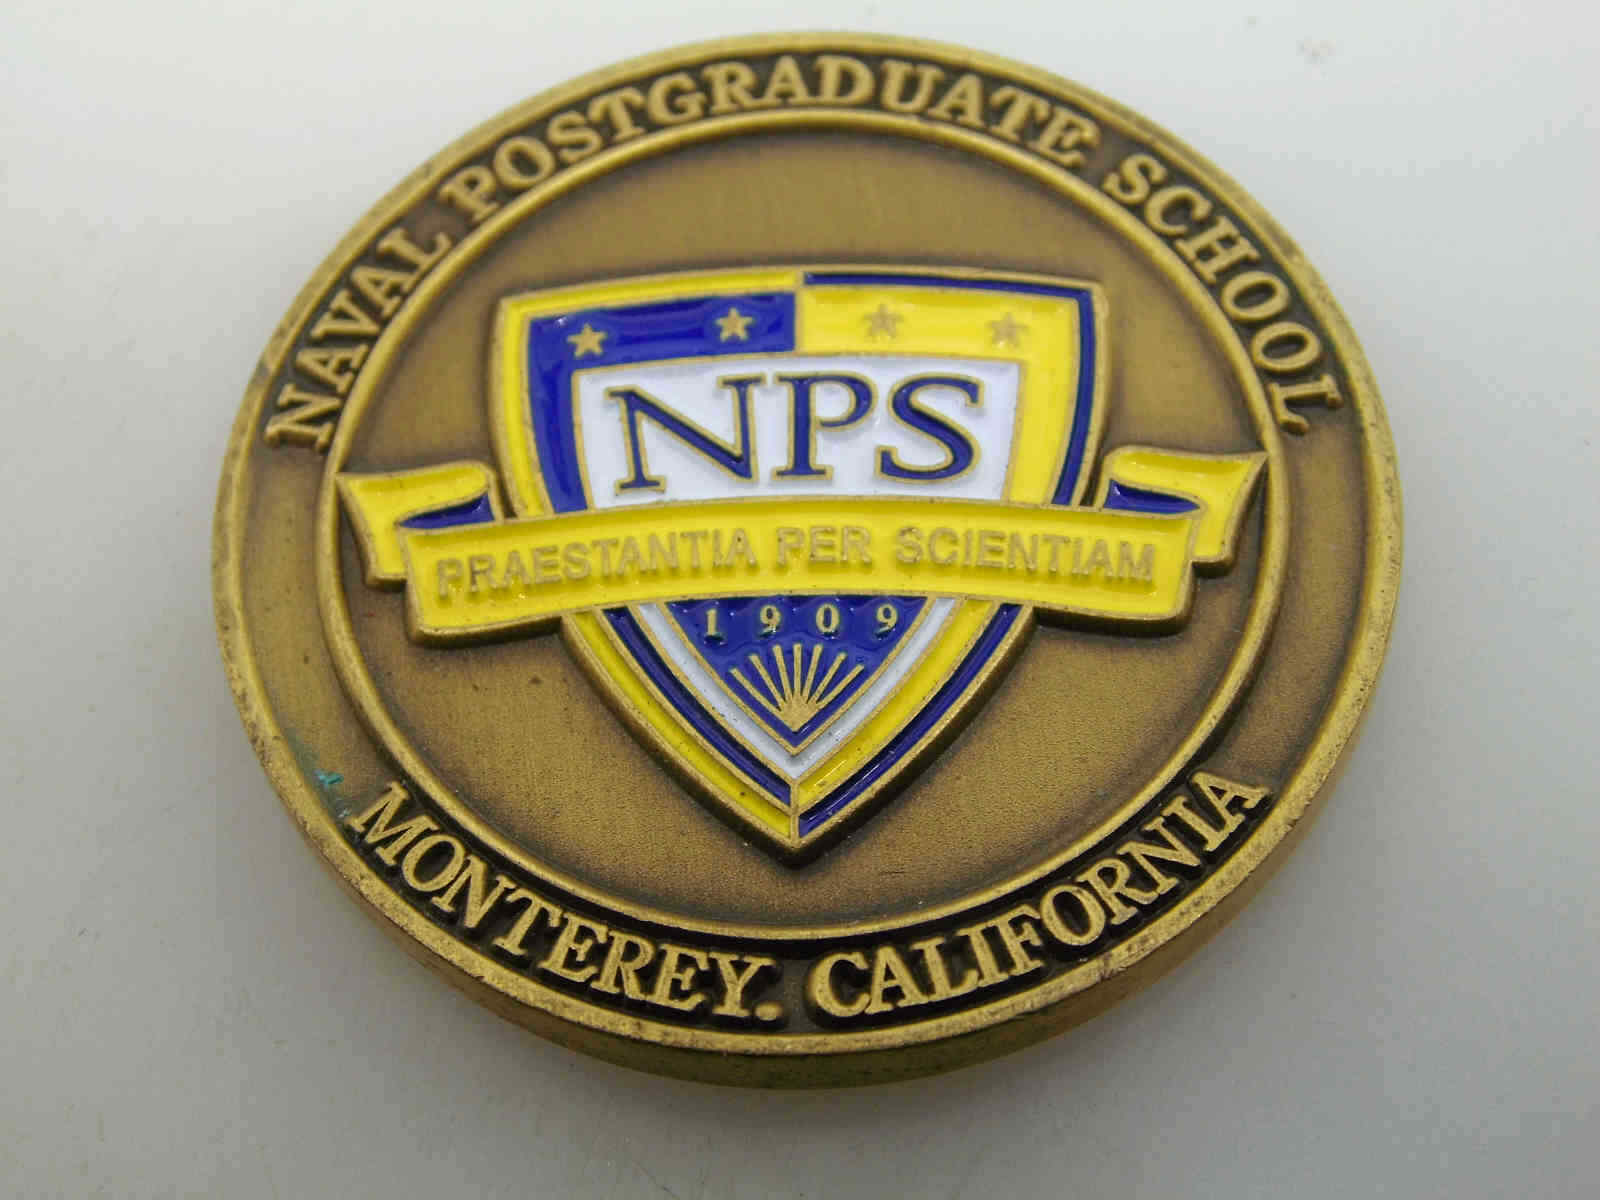 NAVAL POSTGRADUATE SCHOOL MONTEREY CALIFORNIA NPS CHALLENGE COIN